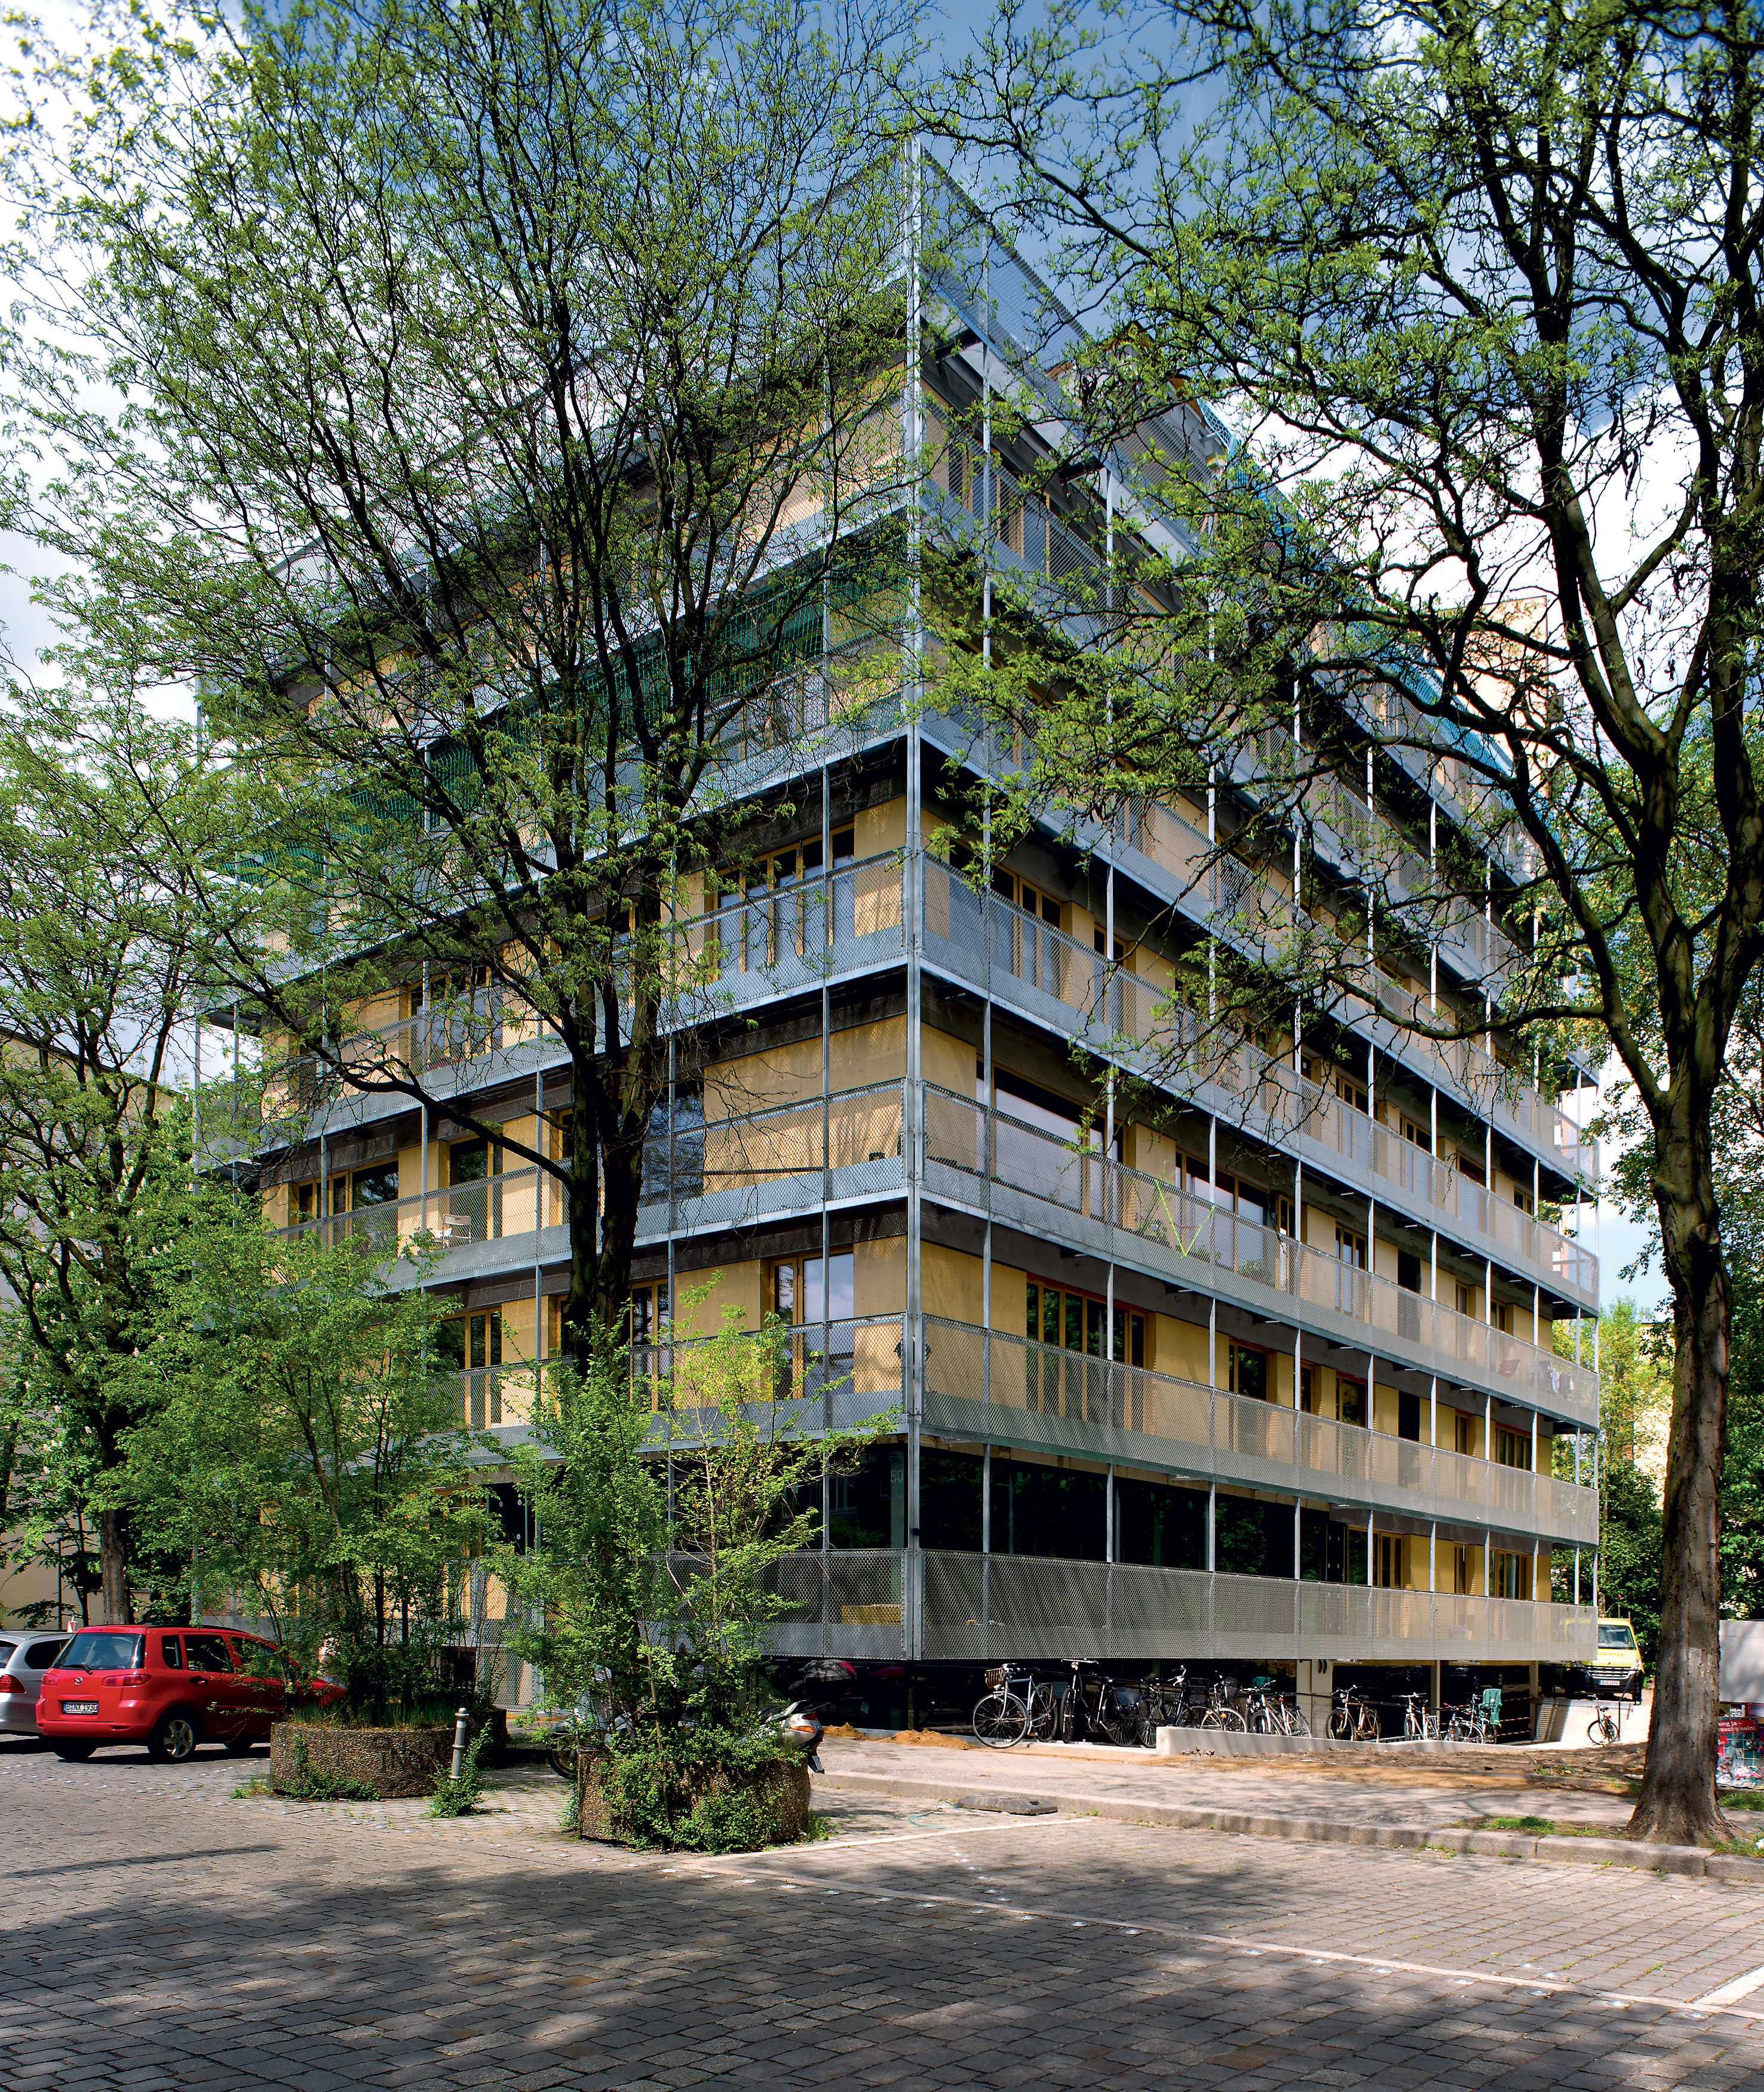 Dom na Ritterstrasse 50 má skeletovú konštrukciu. To umožňuje rôzne dispozičné riešenia jednotlivých bytov.